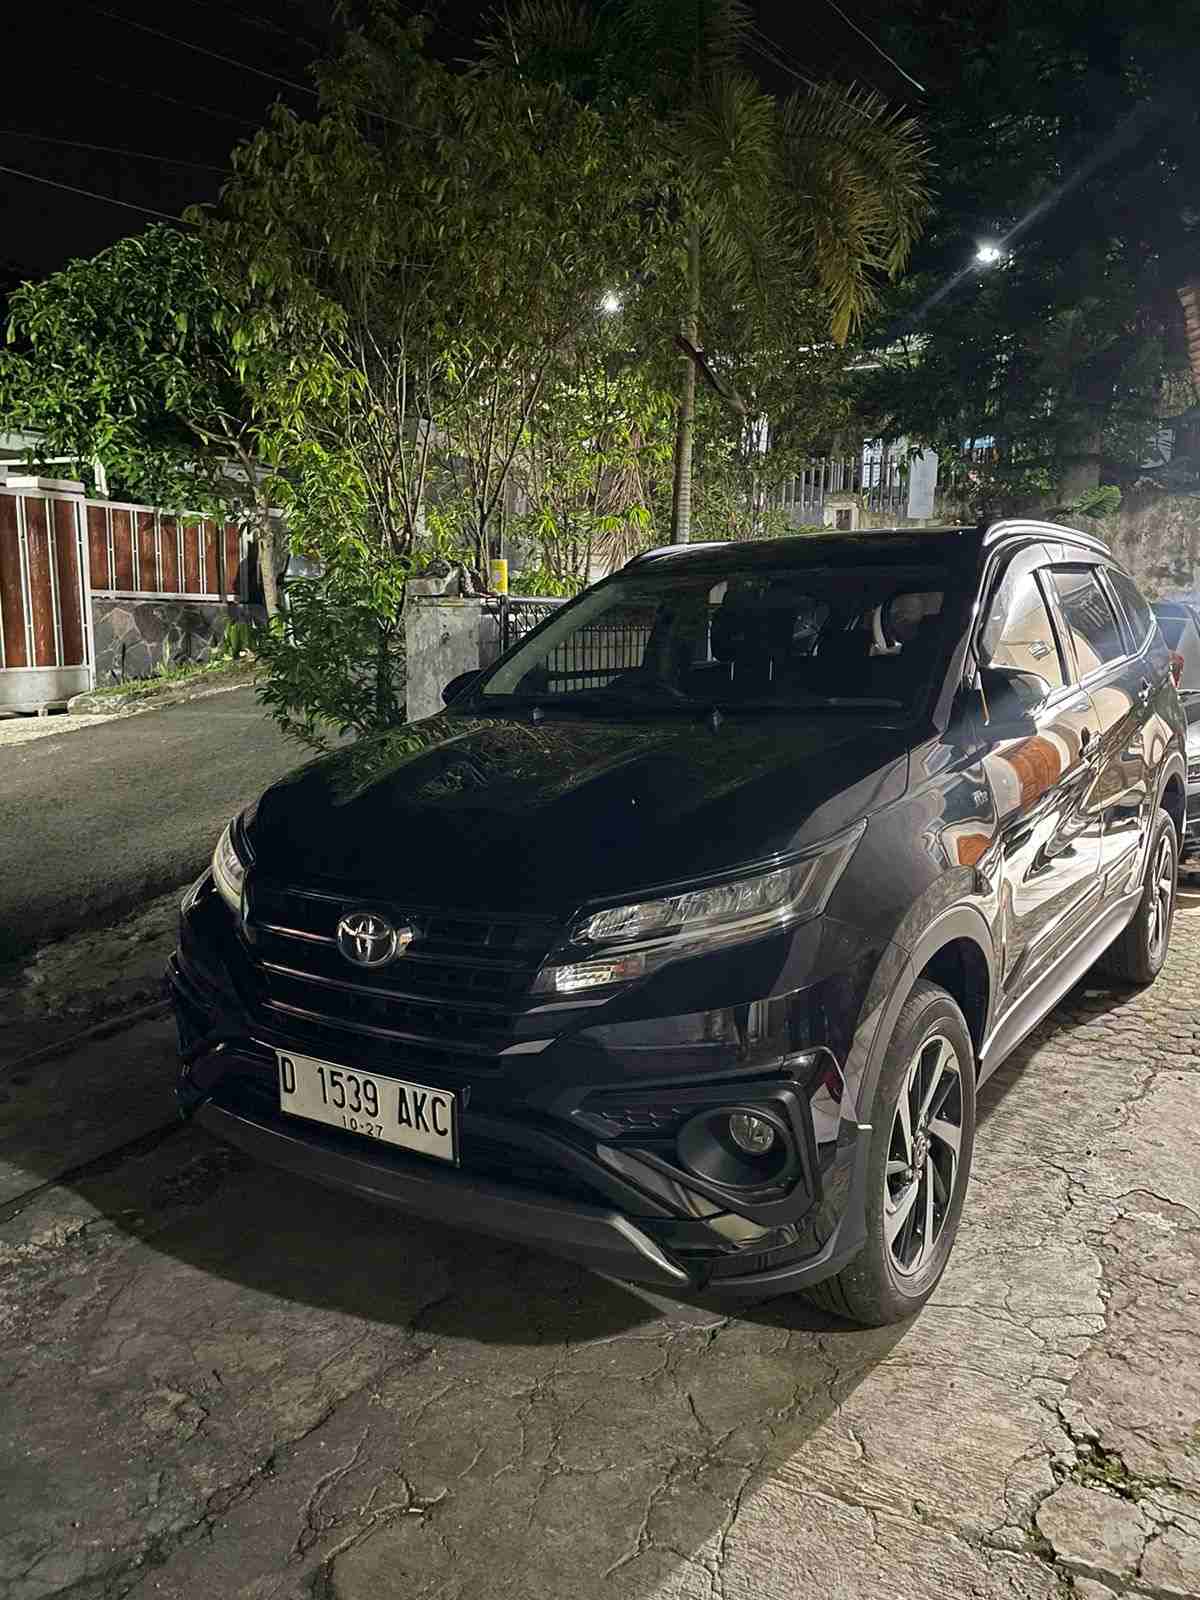 Promo Rental Mobil Avanza Di Surabaya